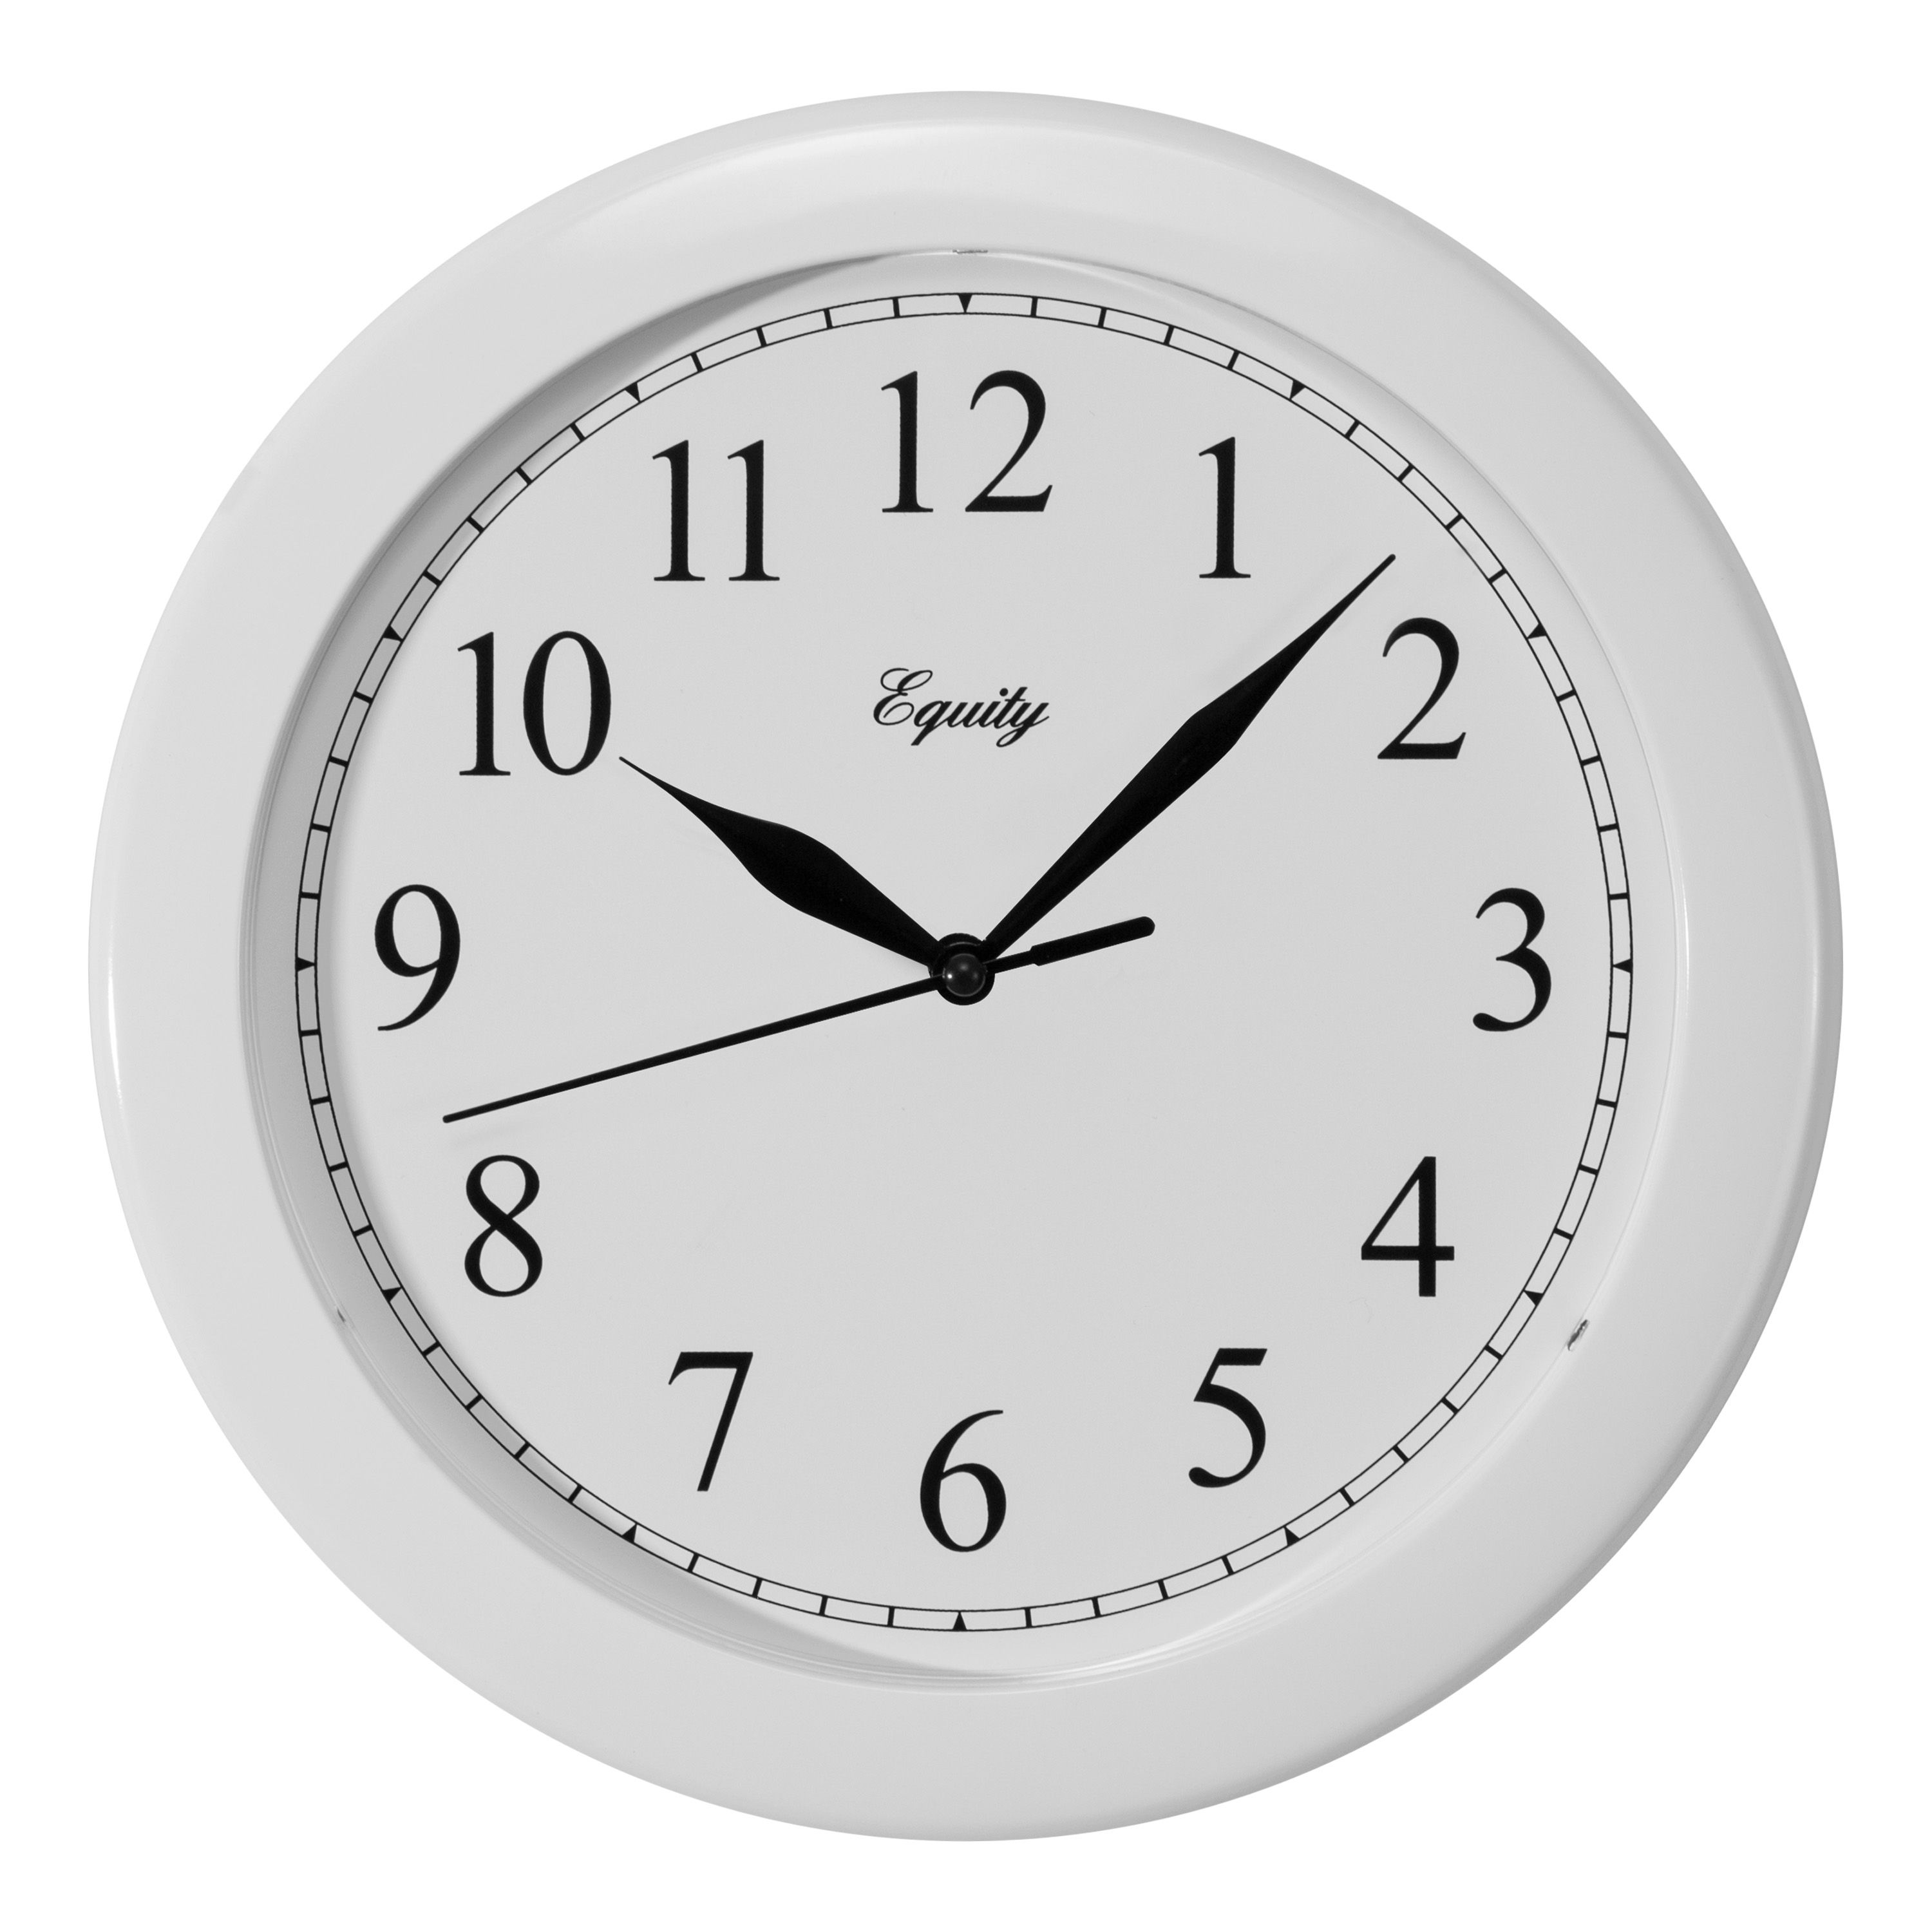 25201 10 in. White Plastic Wall Clock -  La Crosse Technology Ltd, LA577150